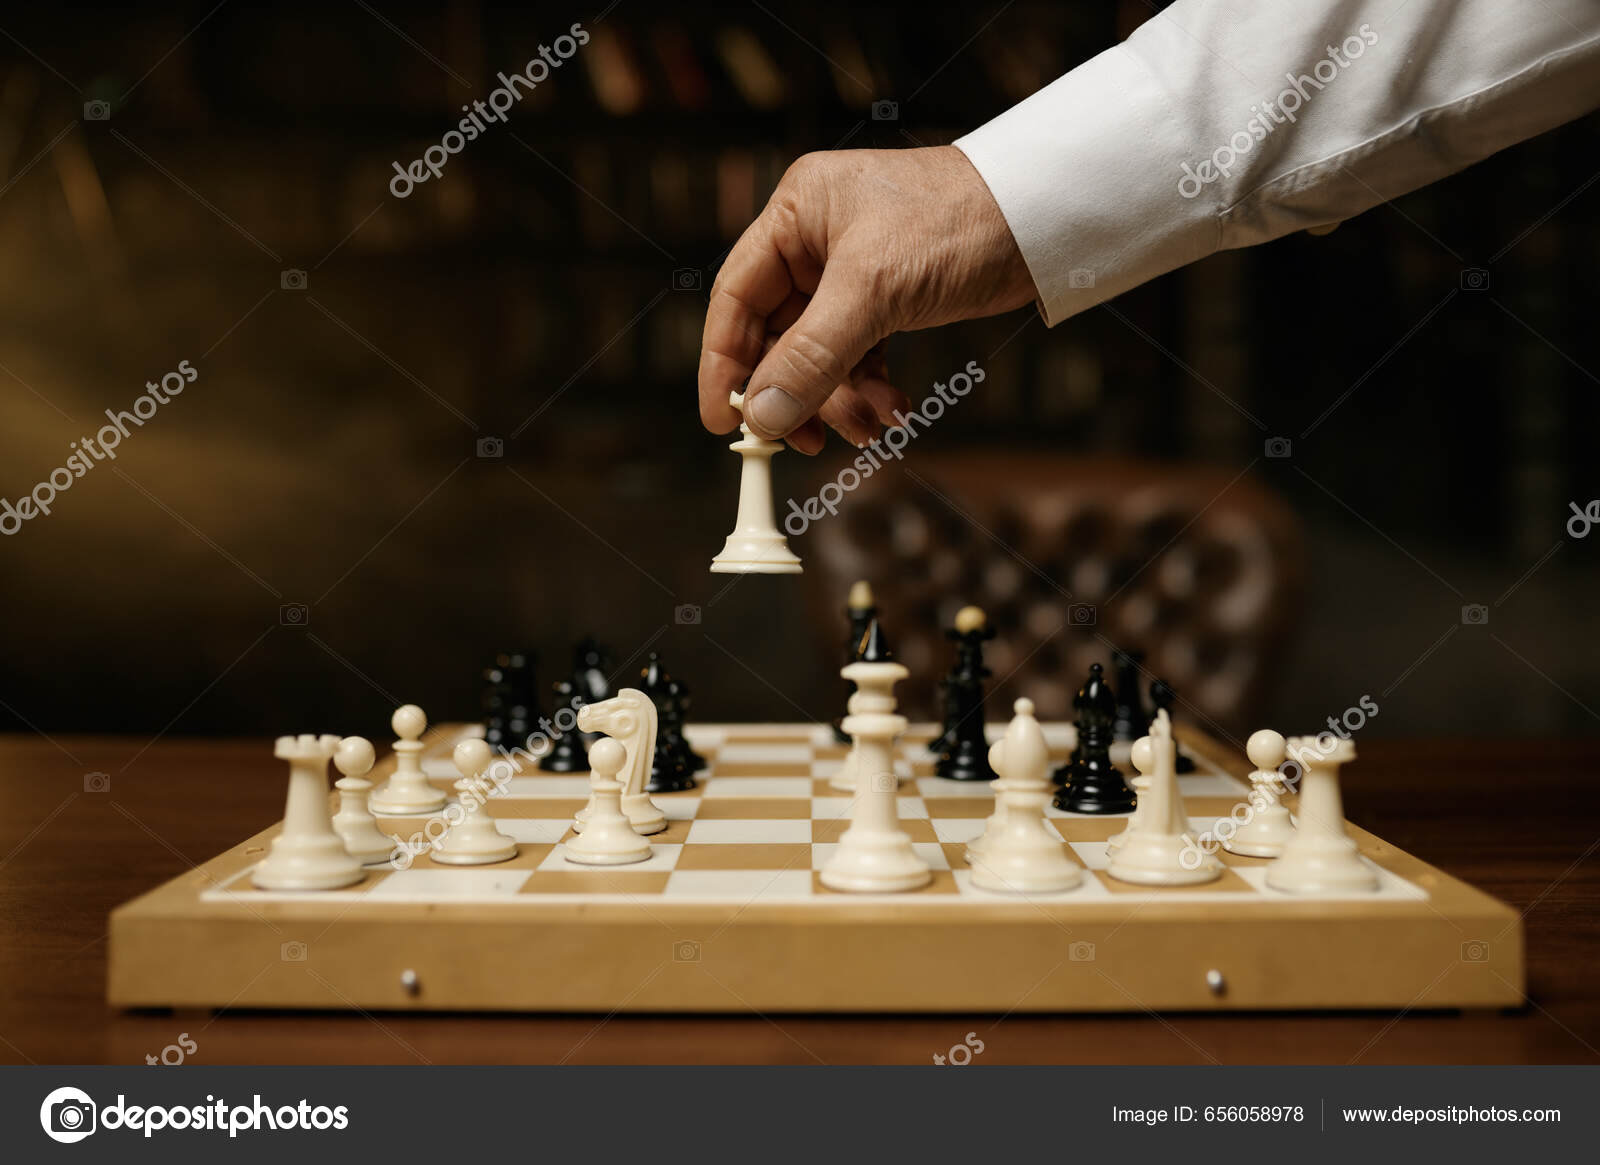 Banco de imagens : tabuleiro de xadrez, Jogos indoor e esportes